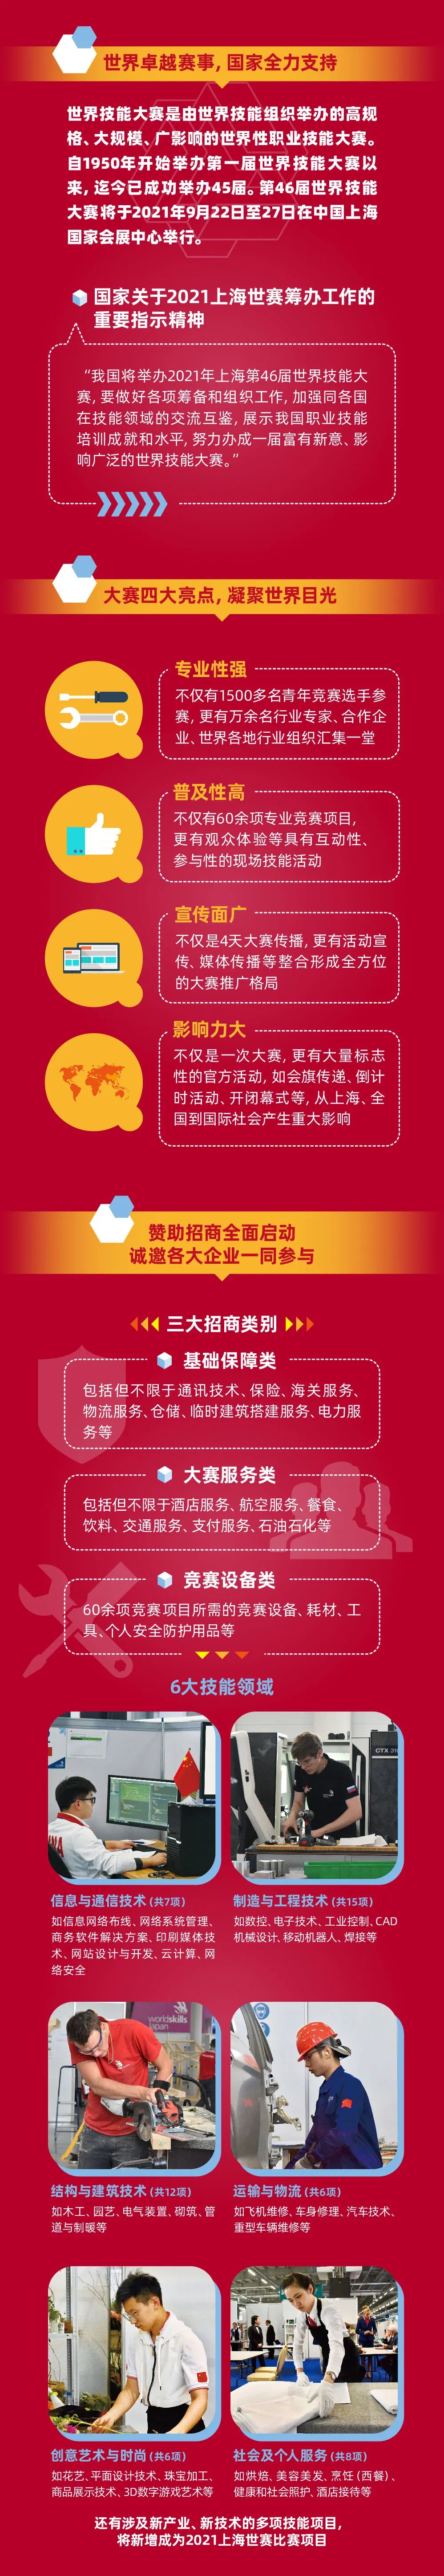 创业者上海21年第46届世界技能大赛邀您一起参与 海纳百创 微信公众号文章阅读 Wemp